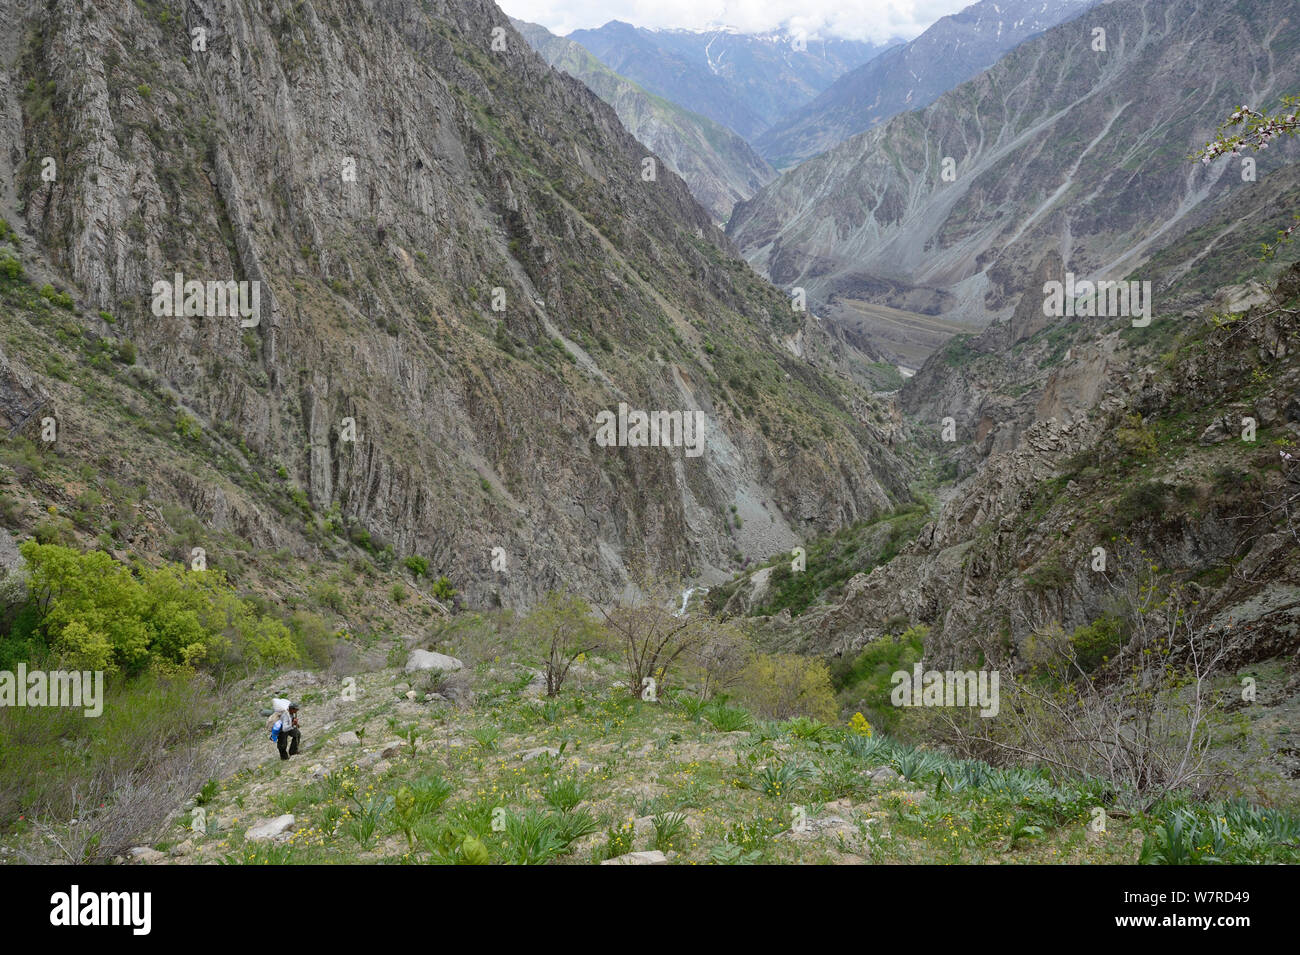 Braunbär (Ursus arctos) Lebensraum in der Höhe von 1000-3000 m, mit Führung Tragetaschen, dashti Jum finden, Tadschikistan, April 2012 Stockfoto